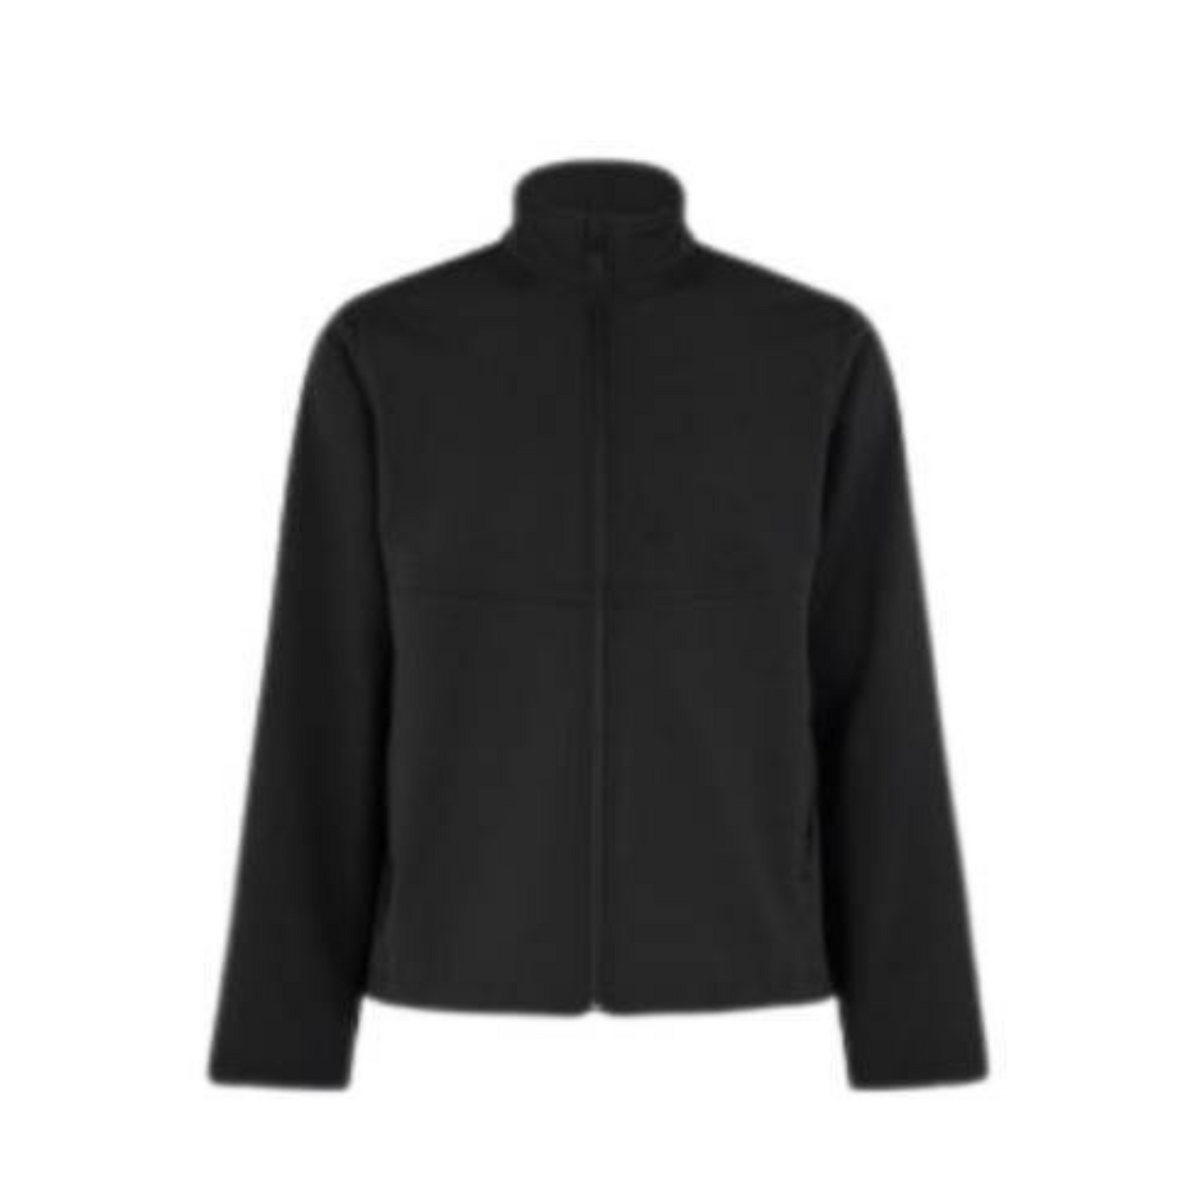 NNT Mens Bonded Fleece Zip Jacket Long Sleeve Black Jacket Comfy CATBB9